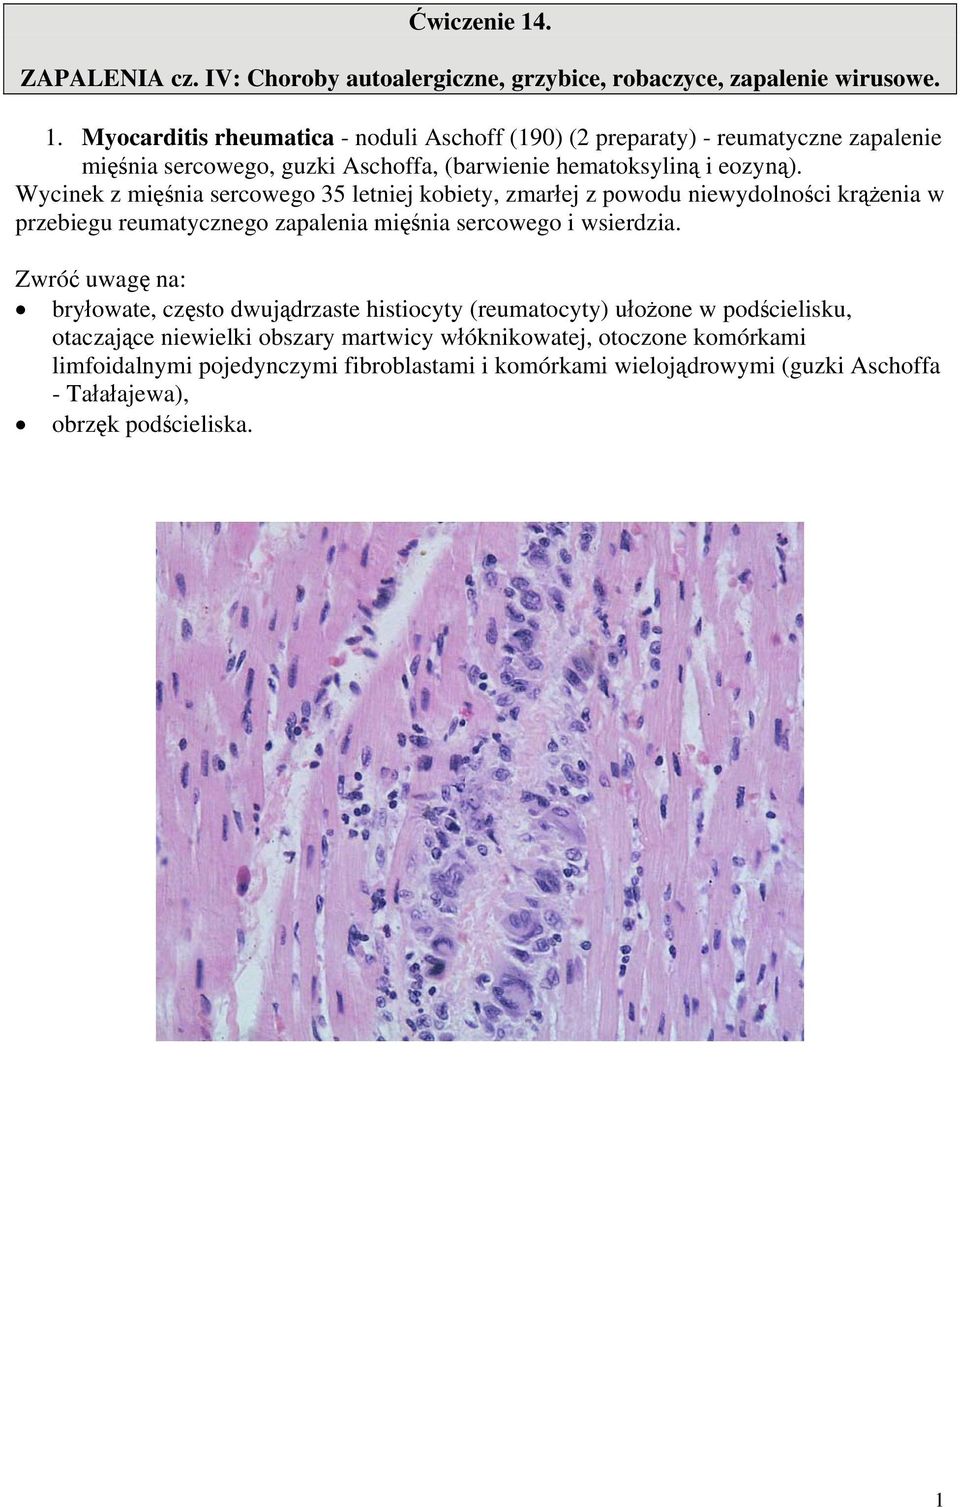 bryłowate, często dwujądrzaste histiocyty (reumatocyty) ułożone w podścielisku, otaczające niewielki obszary martwicy włóknikowatej, otoczone komórkami limfoidalnymi